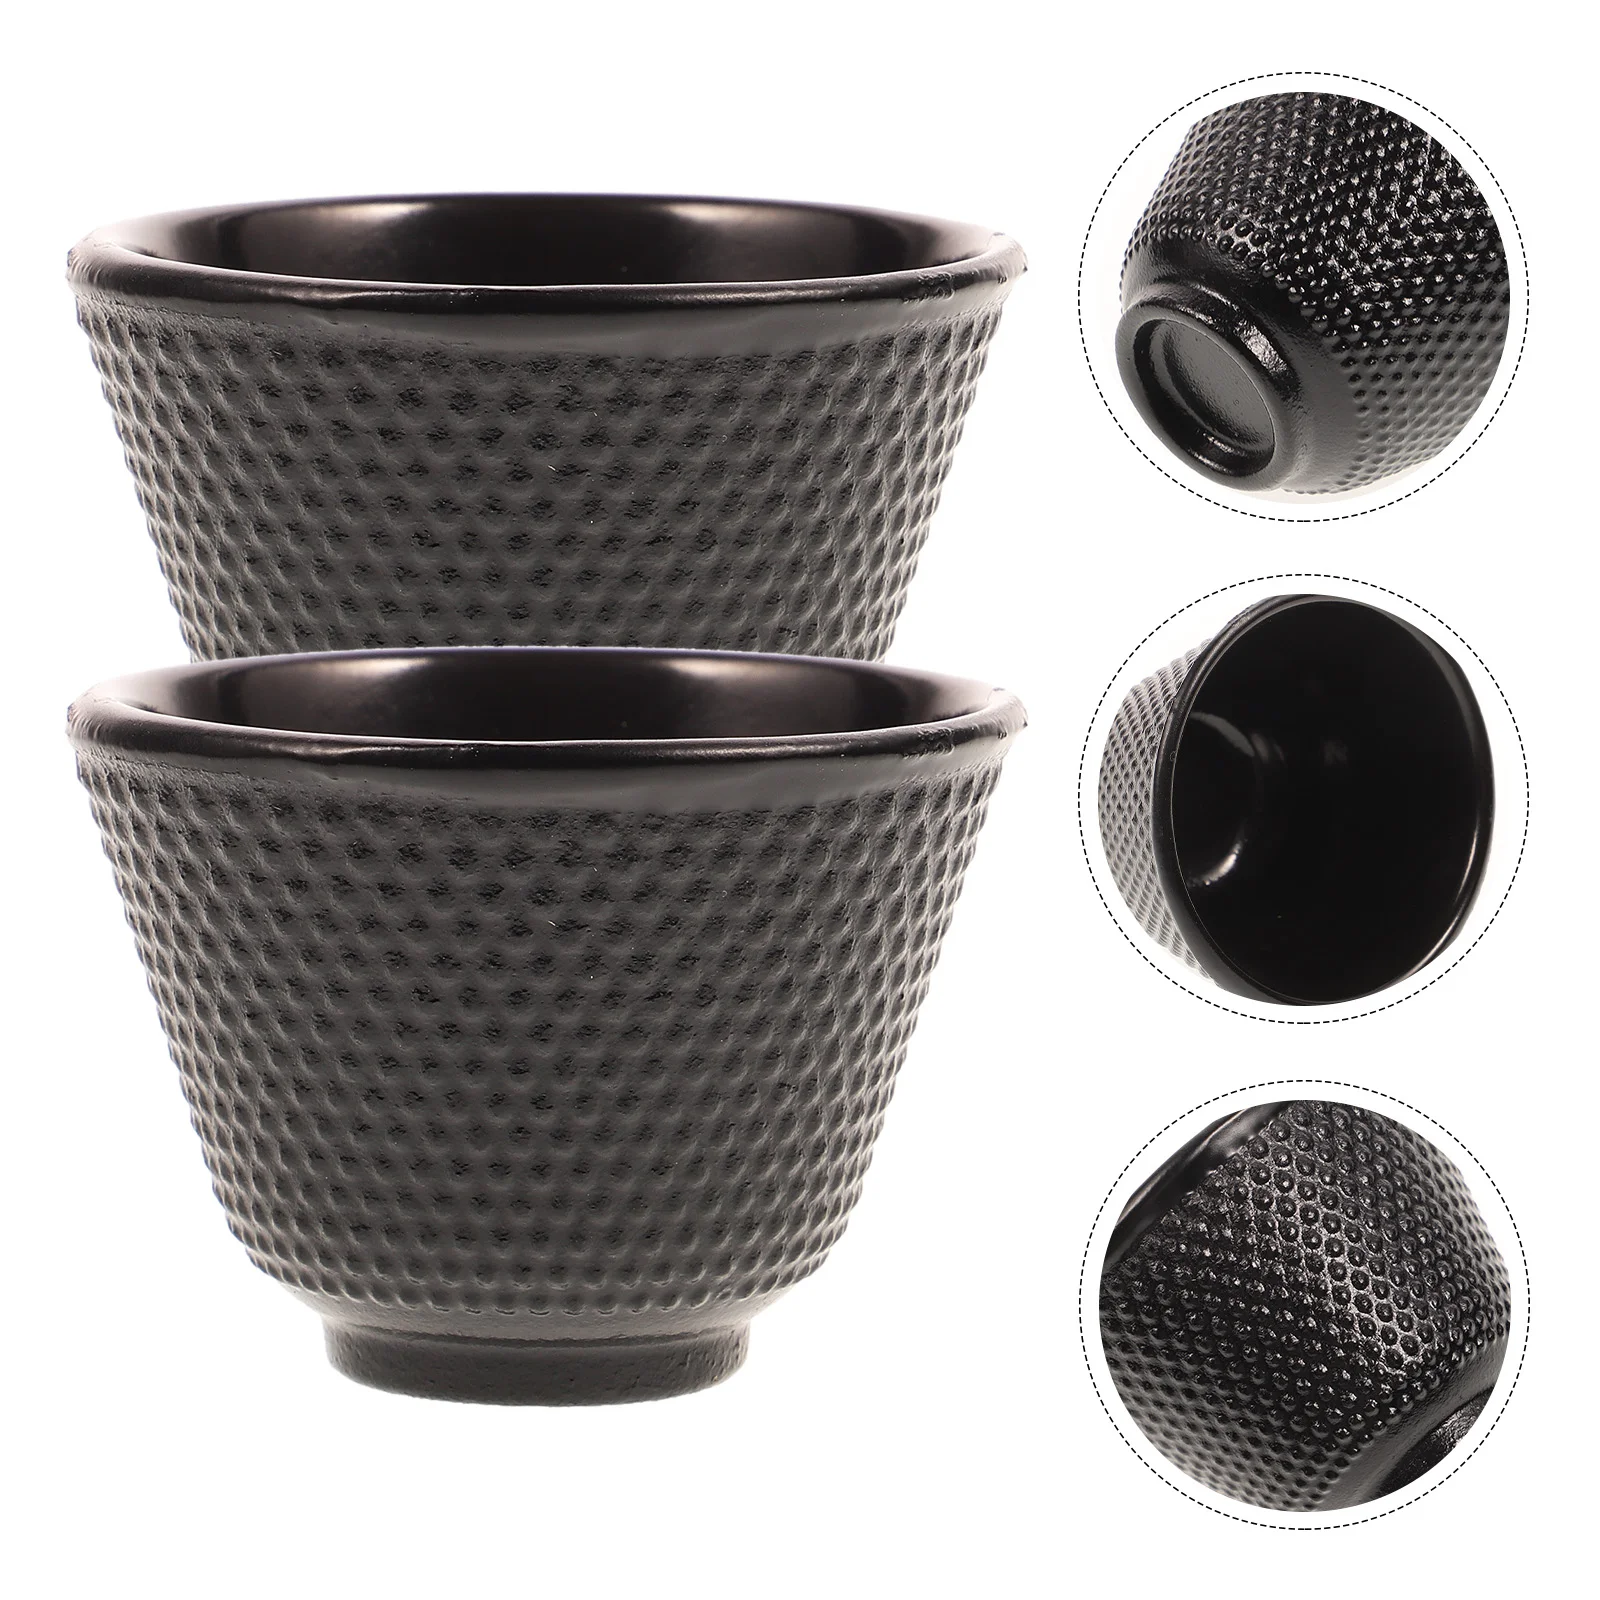 

2 Pcs Mug Cast Iron Teacup Ceramic Espresso Traditional Japanese Cups Retro Teaware Casting pot